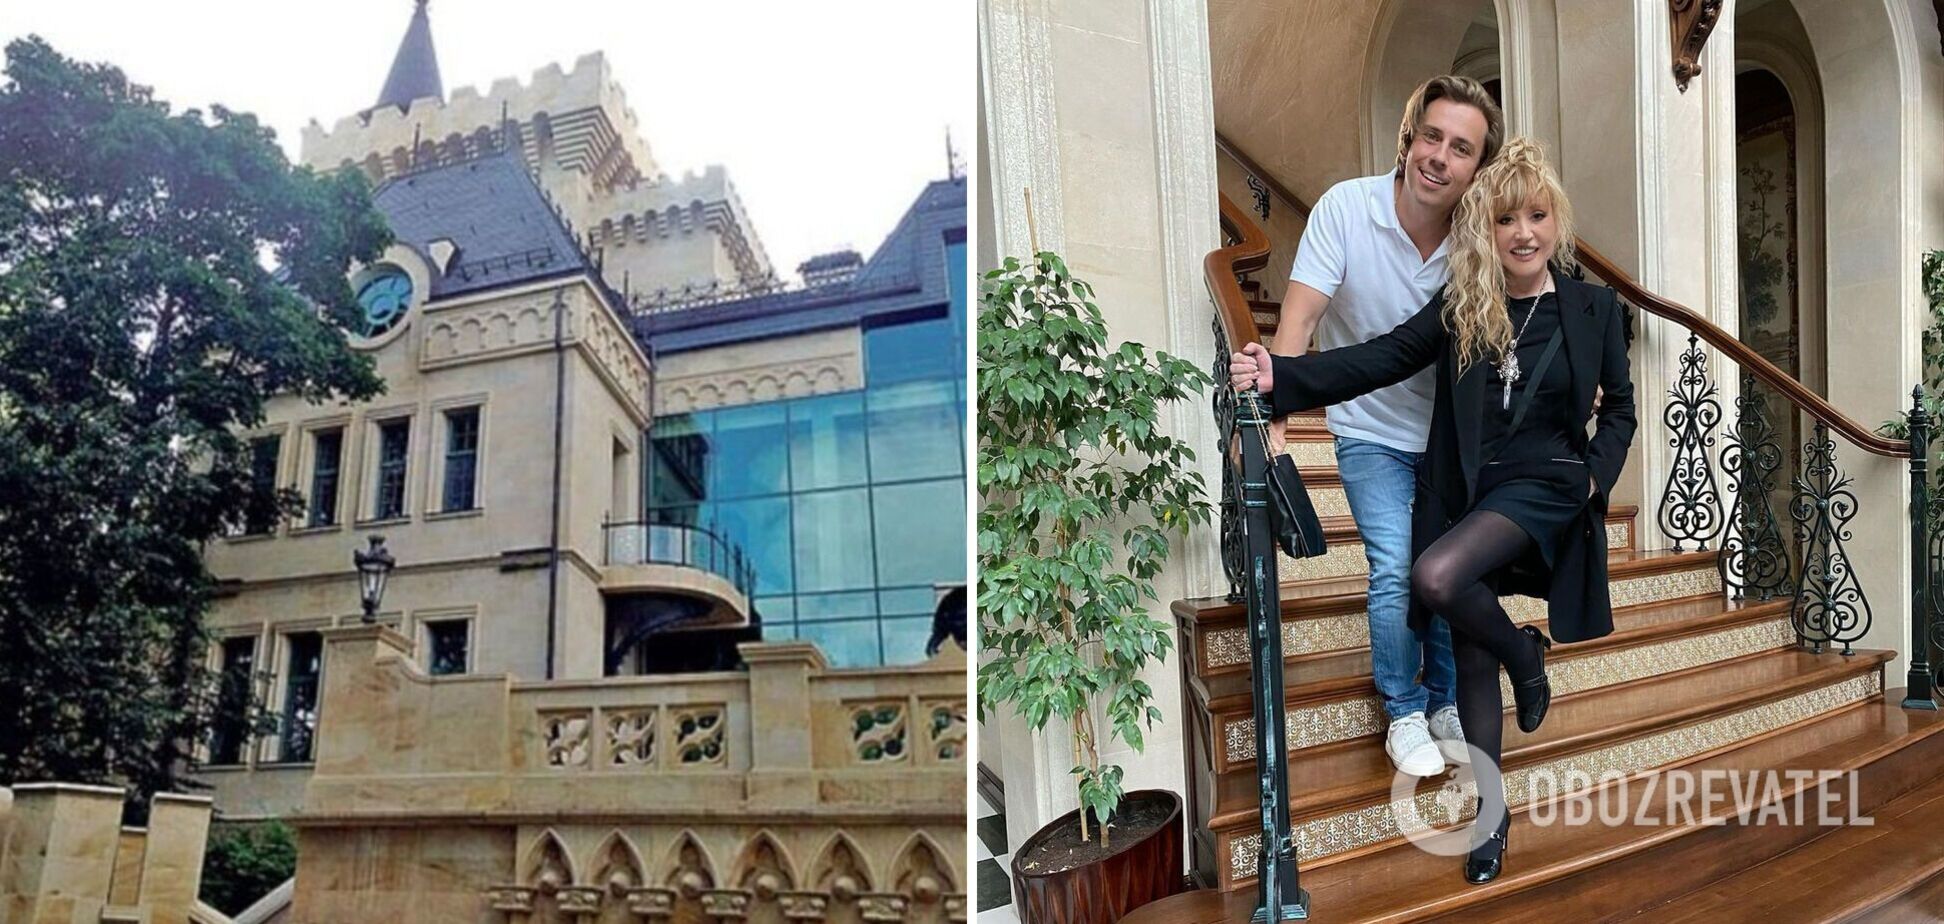 Галкин рассказал о секретных комнатах в замке Пугачевой. Как выглядит шестиэтажный особняк